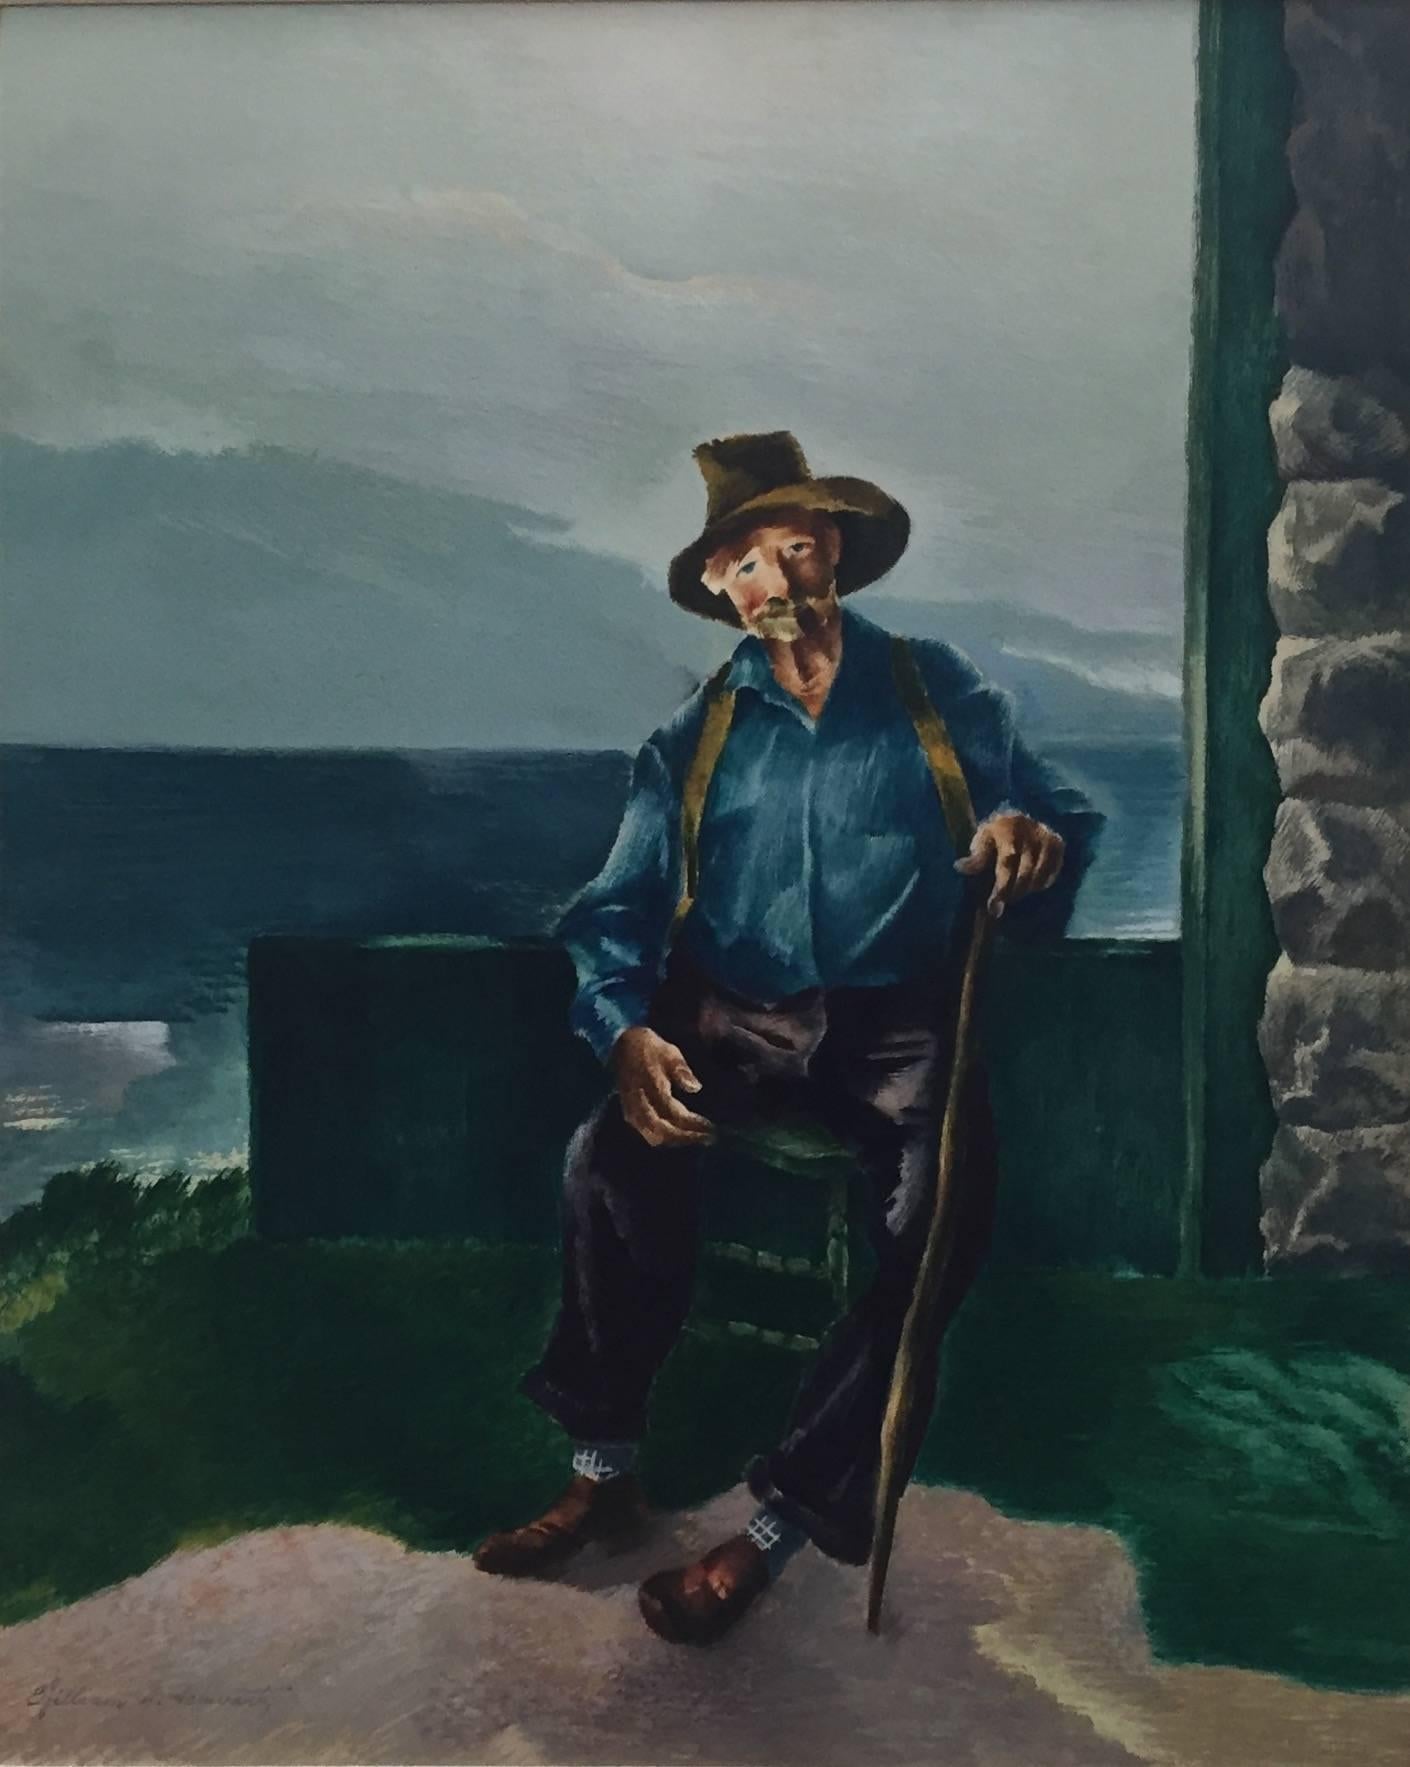 Porträt eines alten Mannes mit Stock, von dem amerikanischen Künstler William S. Schwartz, um 1940, Gouache-Malerei, signiert l.l., gerahmt.


William S. Schwartz (23. Februar 1896 - 10. Februar 1977) war ein amerikanischer Künstler, der in Chicago